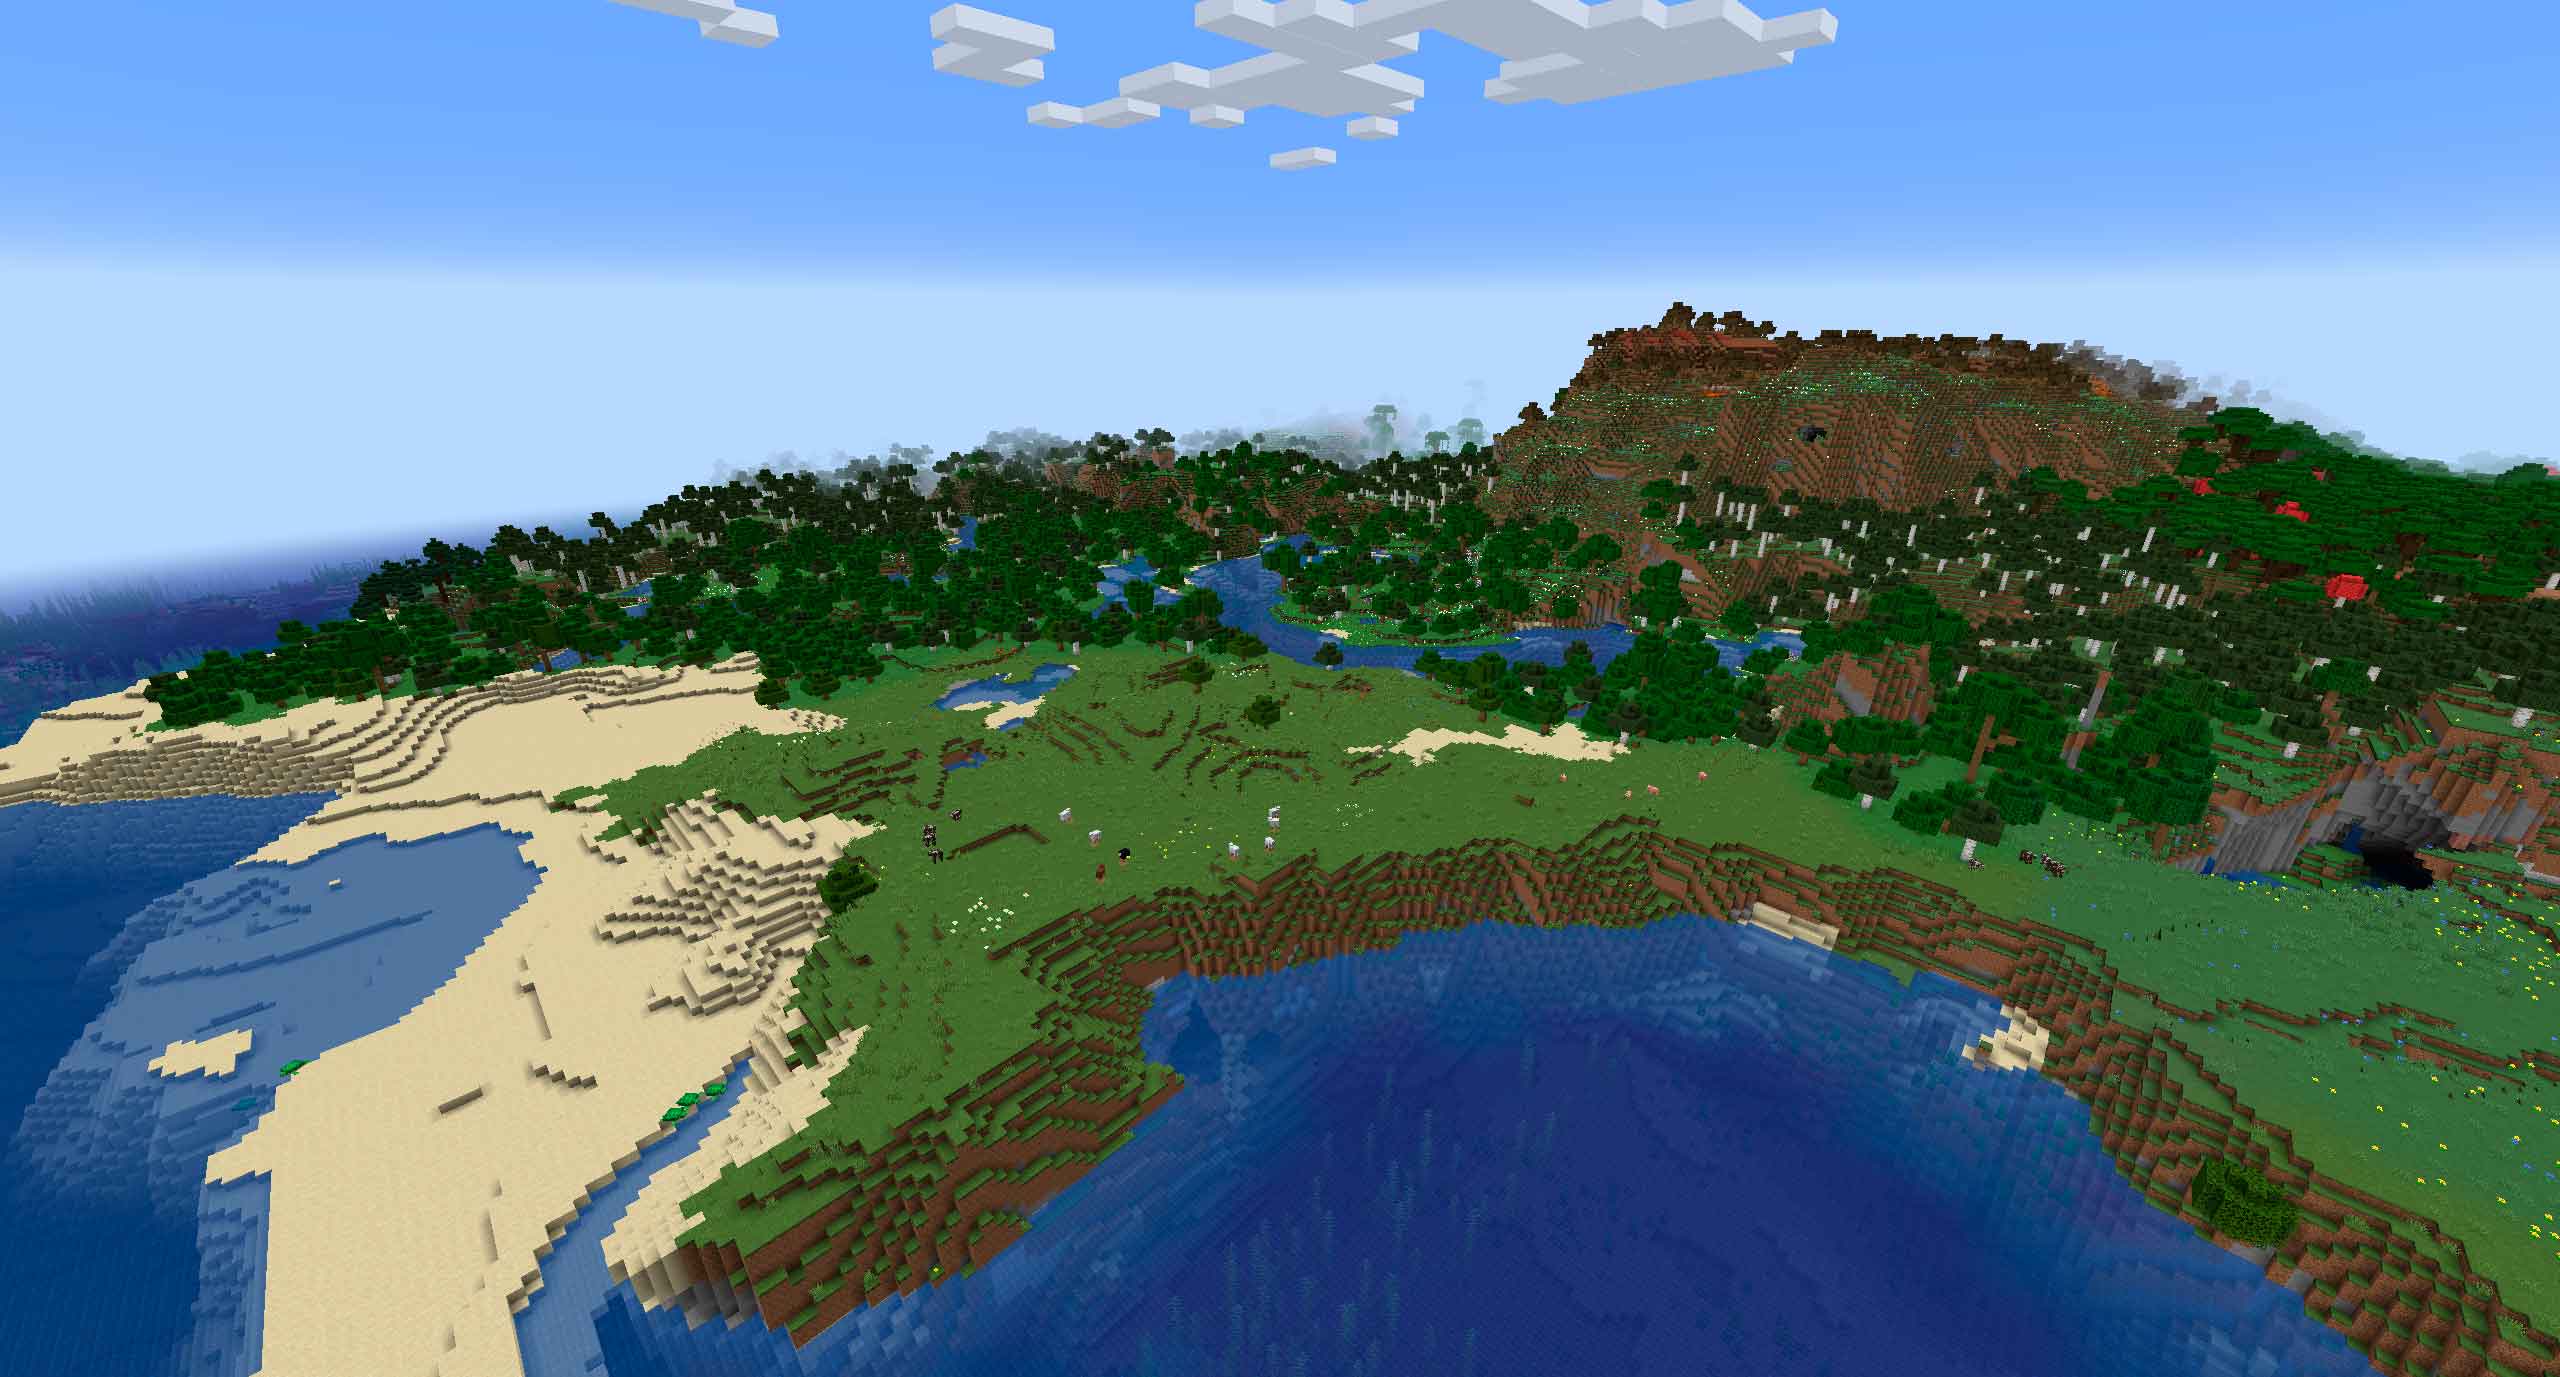 20 Июля вышел второй экспериментальный снапшот версии Minecraft 1.18. Были внесены некоторые улучшения и исправления